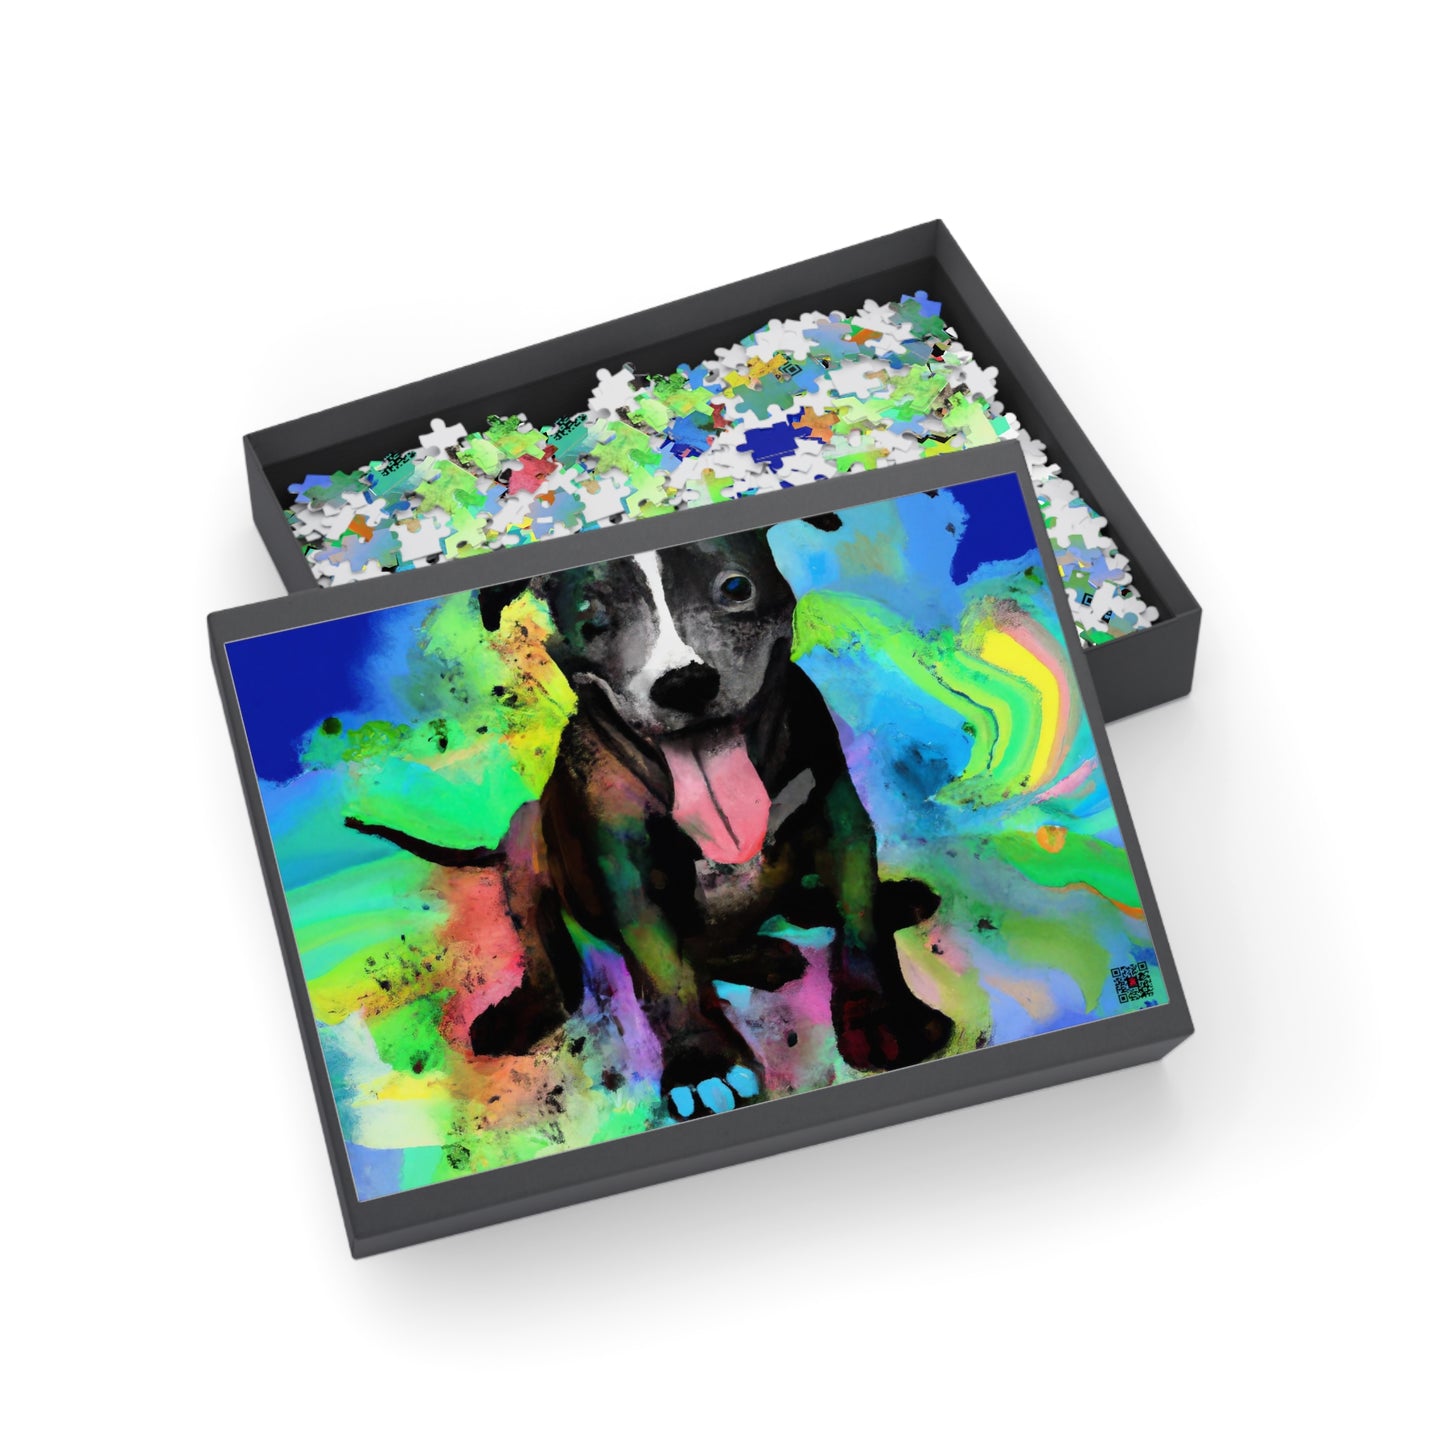 Isamon Emperius - Pitbull Puppy - Puzzle